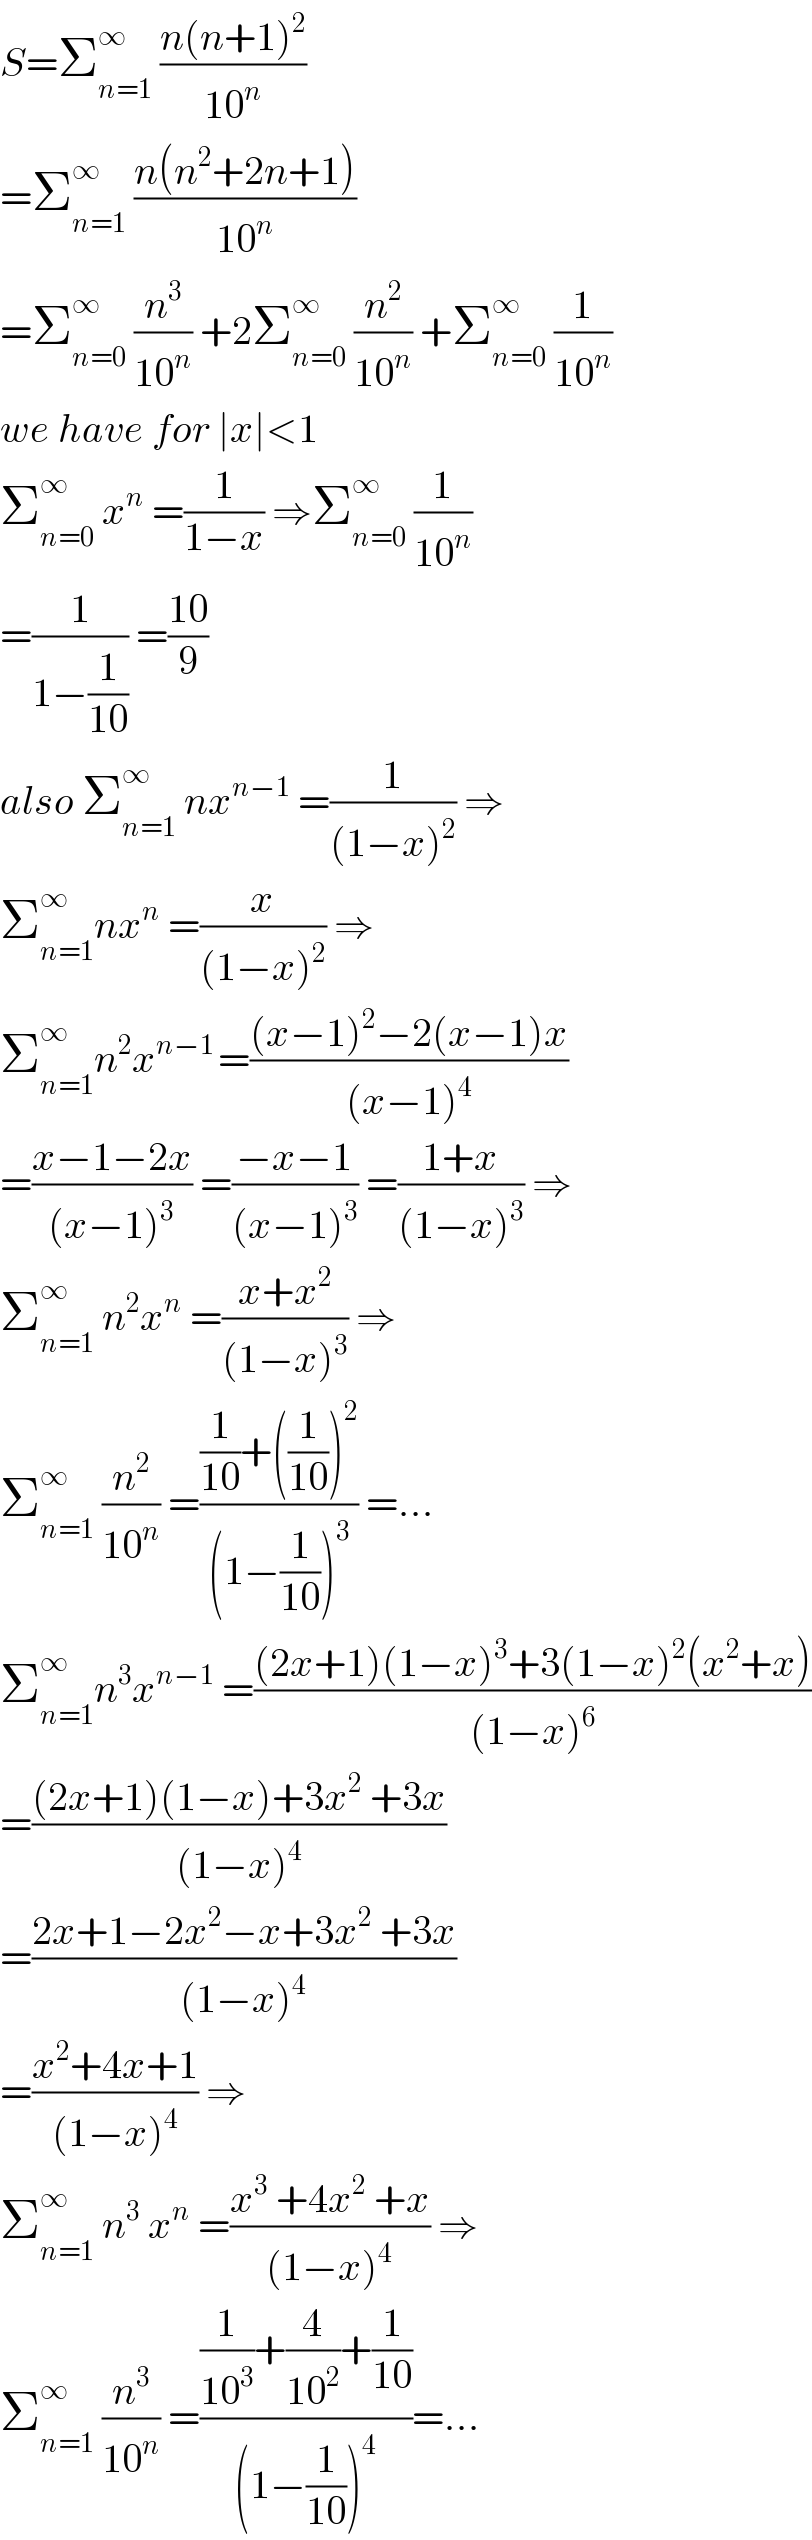 S=Σ_(n=1) ^∞  ((n(n+1)^2 )/(10^n ))  =Σ_(n=1) ^∞  ((n(n^2 +2n+1))/(10^n ))  =Σ_(n=0) ^∞  (n^3 /(10^n )) +2Σ_(n=0) ^∞  (n^2 /(10^n )) +Σ_(n=0) ^∞  (1/(10^n ))  we have for ∣x∣<1   Σ_(n=0) ^∞  x^n  =(1/(1−x)) ⇒Σ_(n=0) ^∞  (1/(10^n ))  =(1/(1−(1/(10)))) =((10)/9)  also Σ_(n=1) ^∞  nx^(n−1)  =(1/((1−x)^2 )) ⇒  Σ_(n=1) ^∞ nx^n  =(x/((1−x)^2 )) ⇒  Σ_(n=1) ^∞ n^2 x^(n−1 ) =(((x−1)^2 −2(x−1)x)/((x−1)^4 ))  =((x−1−2x)/((x−1)^3 )) =((−x−1)/((x−1)^3 )) =((1+x)/((1−x)^3 )) ⇒  Σ_(n=1) ^∞  n^2 x^n  =((x+x^2 )/((1−x)^3 )) ⇒  Σ_(n=1) ^∞  (n^2 /(10^n )) =(((1/(10))+((1/(10)))^2 )/((1−(1/(10)))^3 )) =...  Σ_(n=1) ^∞ n^3 x^(n−1)  =(((2x+1)(1−x)^3 +3(1−x)^2 (x^2 +x))/((1−x)^6 ))  =(((2x+1)(1−x)+3x^2  +3x)/((1−x)^4 ))  =((2x+1−2x^2 −x+3x^2  +3x)/((1−x)^4 ))  =((x^2 +4x+1)/((1−x)^4 )) ⇒  Σ_(n=1) ^∞  n^3  x^n  =((x^3  +4x^2  +x)/((1−x)^4 )) ⇒  Σ_(n=1) ^(∞ )  (n^3 /(10^n )) =(((1/(10^3 ))+(4/(10^2 ))+(1/(10)))/((1−(1/(10)))^4 ))=...  